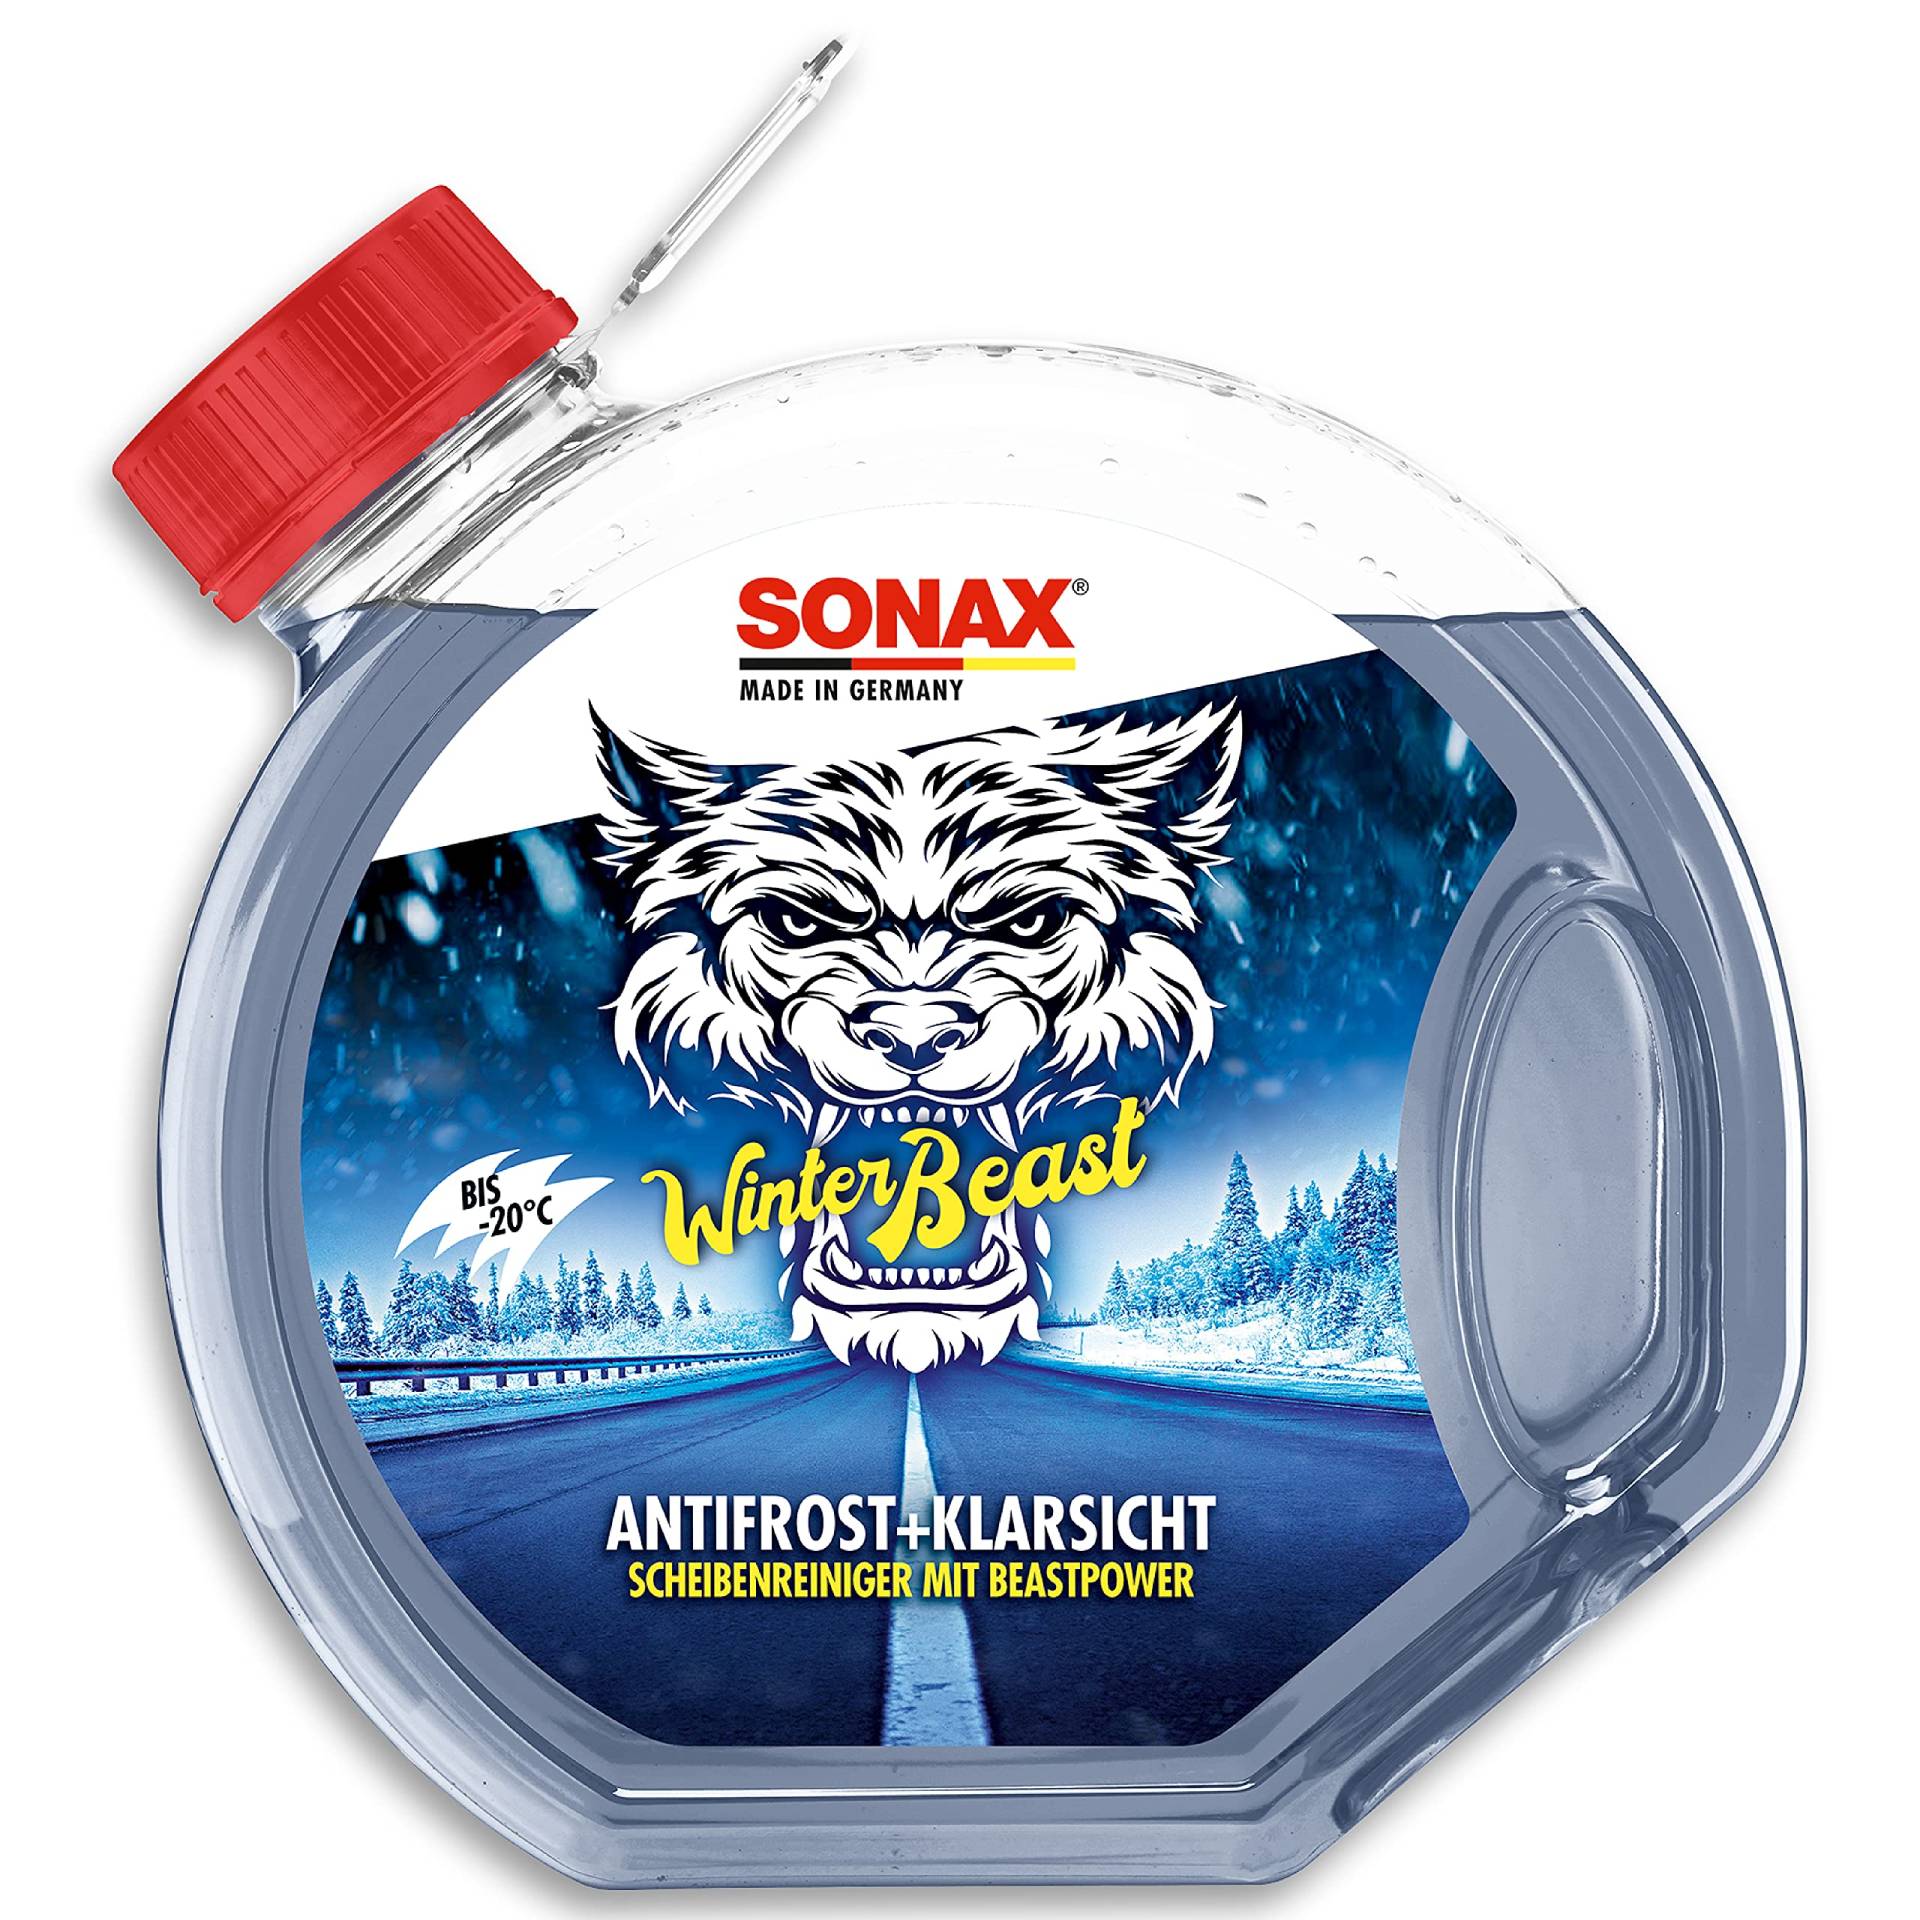 SONAX WinterBeast AntiFrost+KlarSicht Gebrauchsfertig bis -20 °C (3 Liter) schneller, schlierenfreier & effektiver Scheibenreiniger für den Winter, Art-Nr. 01354000 von SONAX